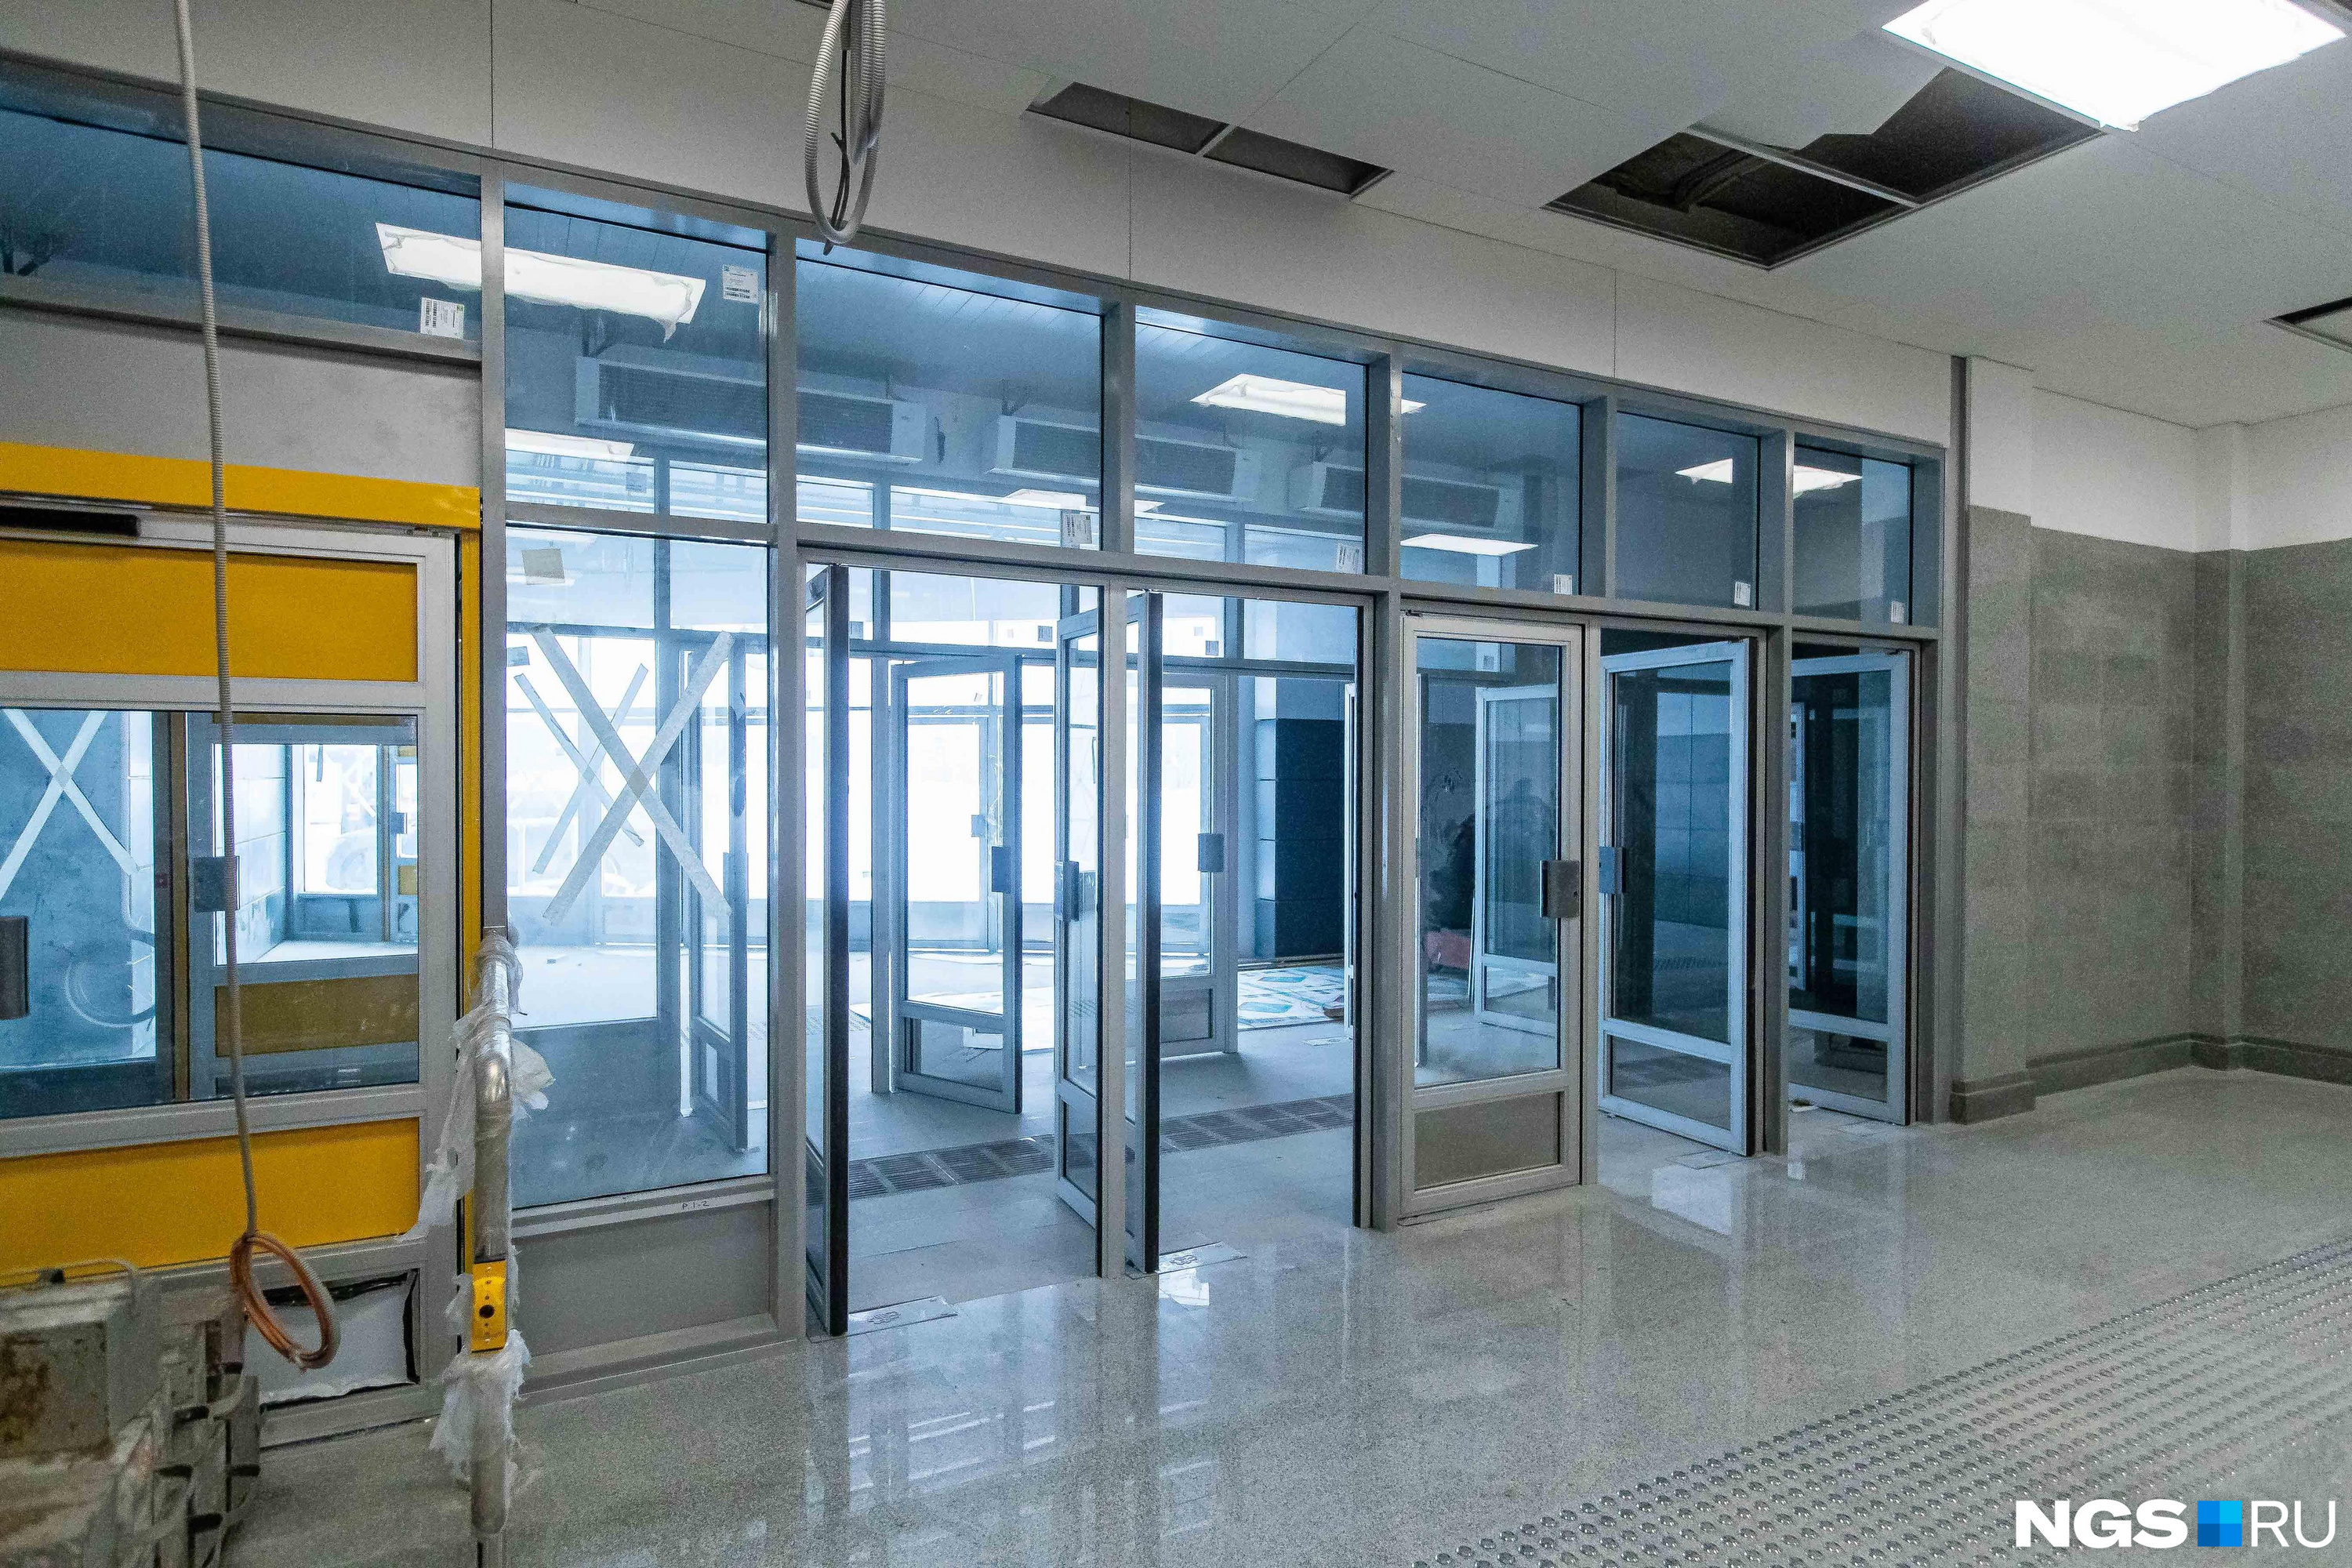 Двери, помеченные желтым, чуть шире — они предназначены для маломобильных пассажиров